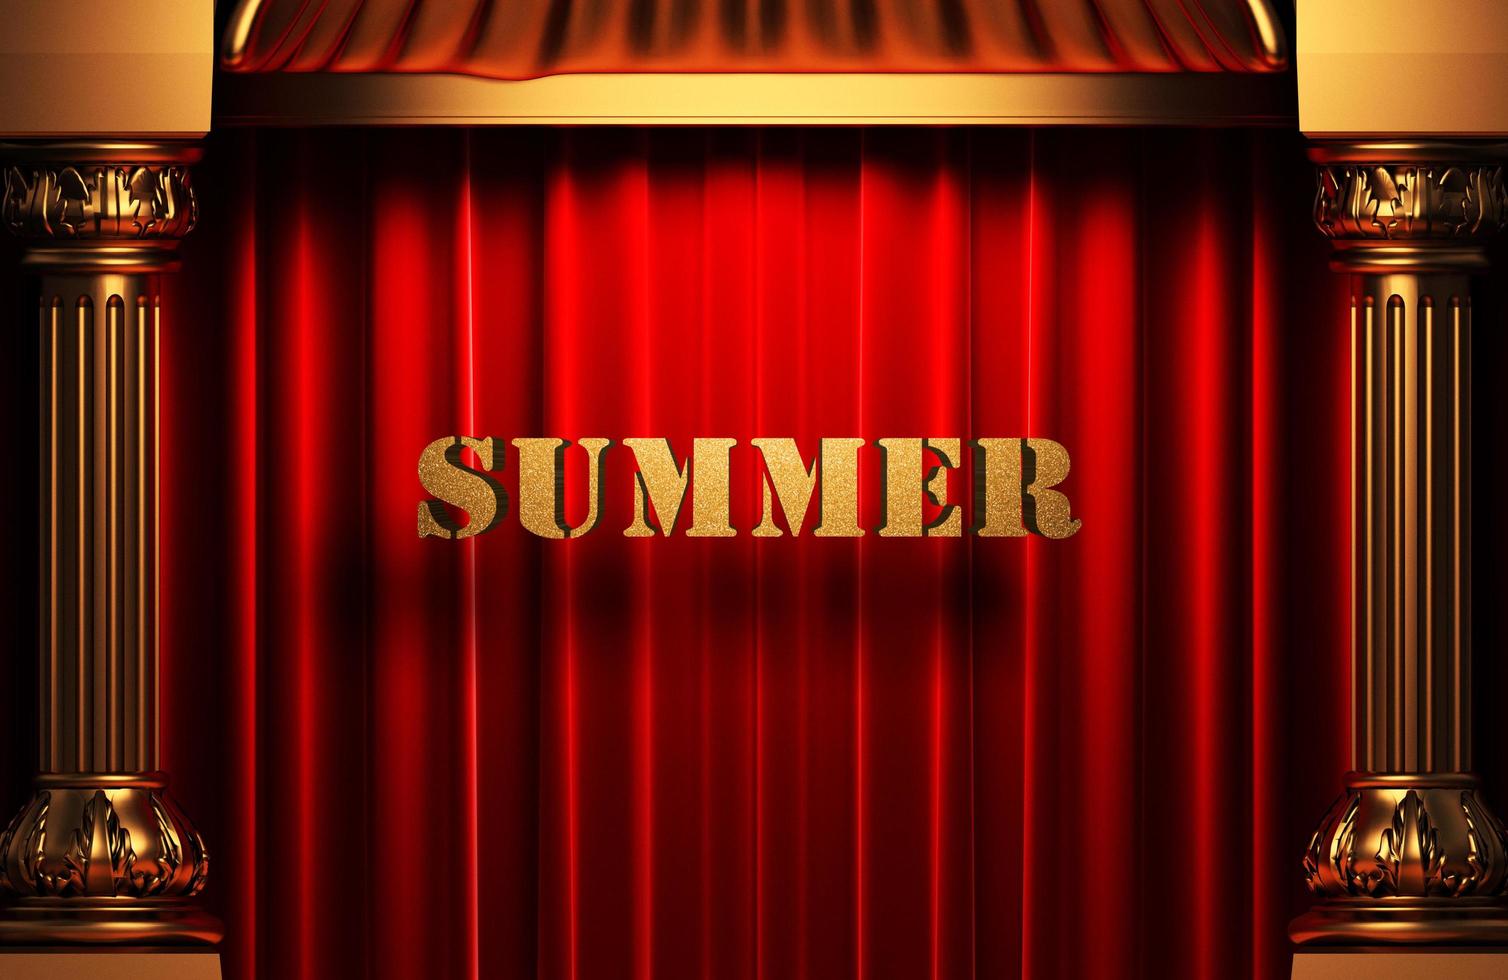 palabra dorada de verano en cortina roja foto